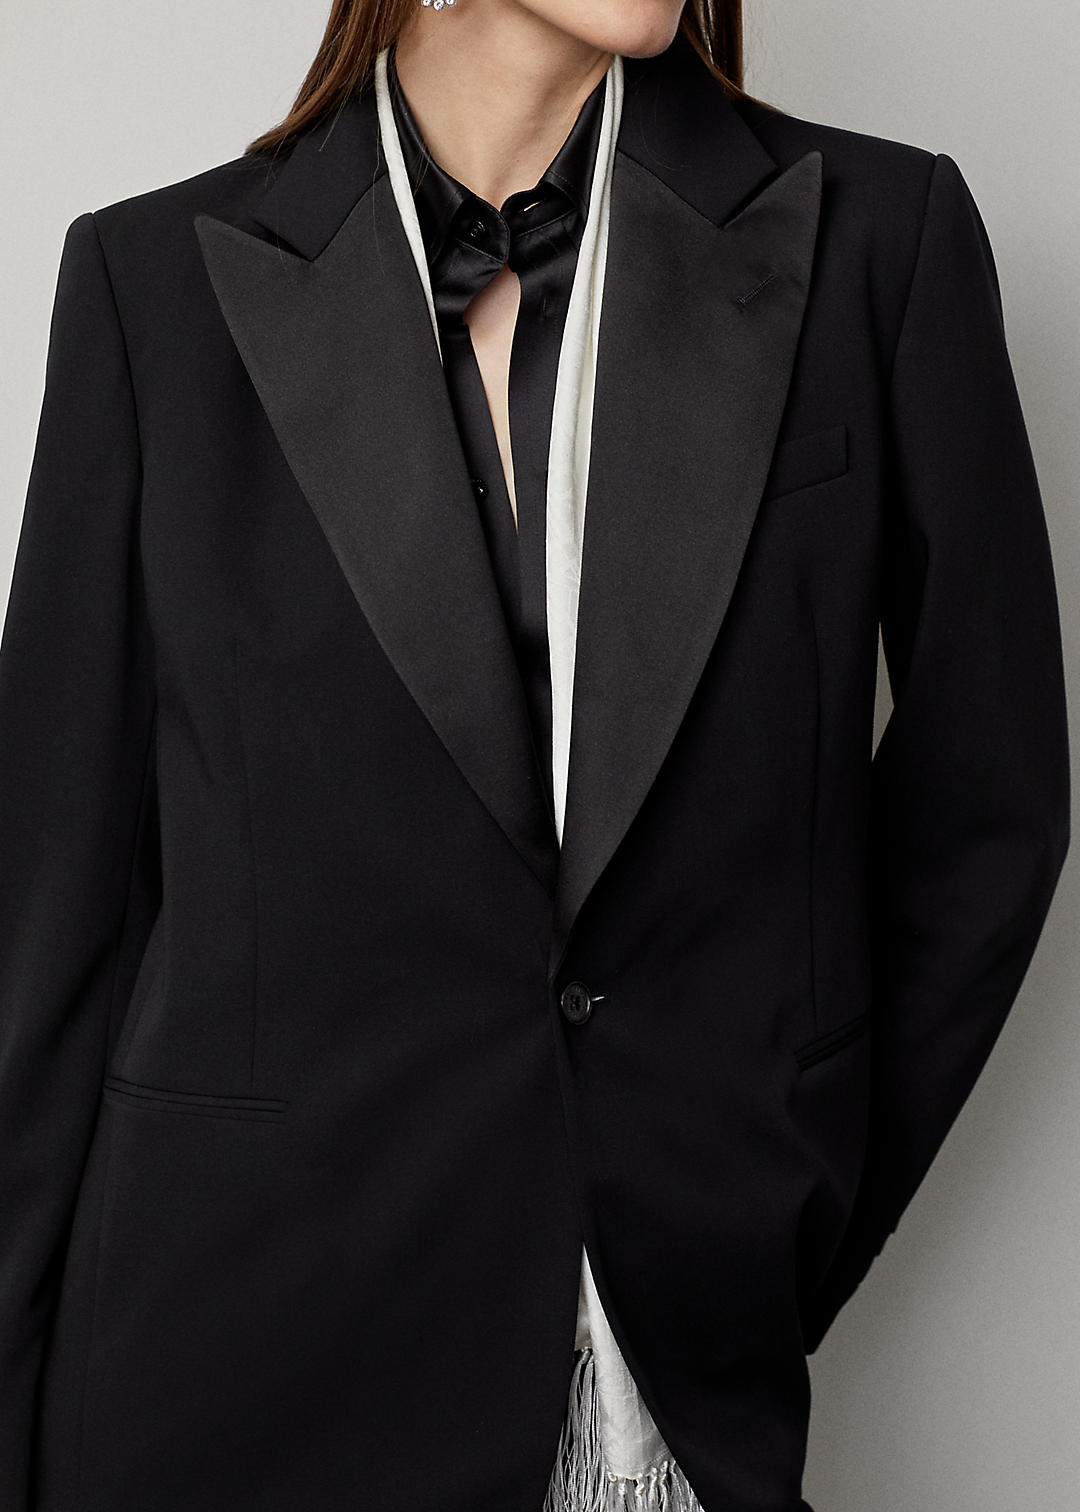 Ralph Lauren Collection Truett Wool Gabardine Tuxedo Jacket 5